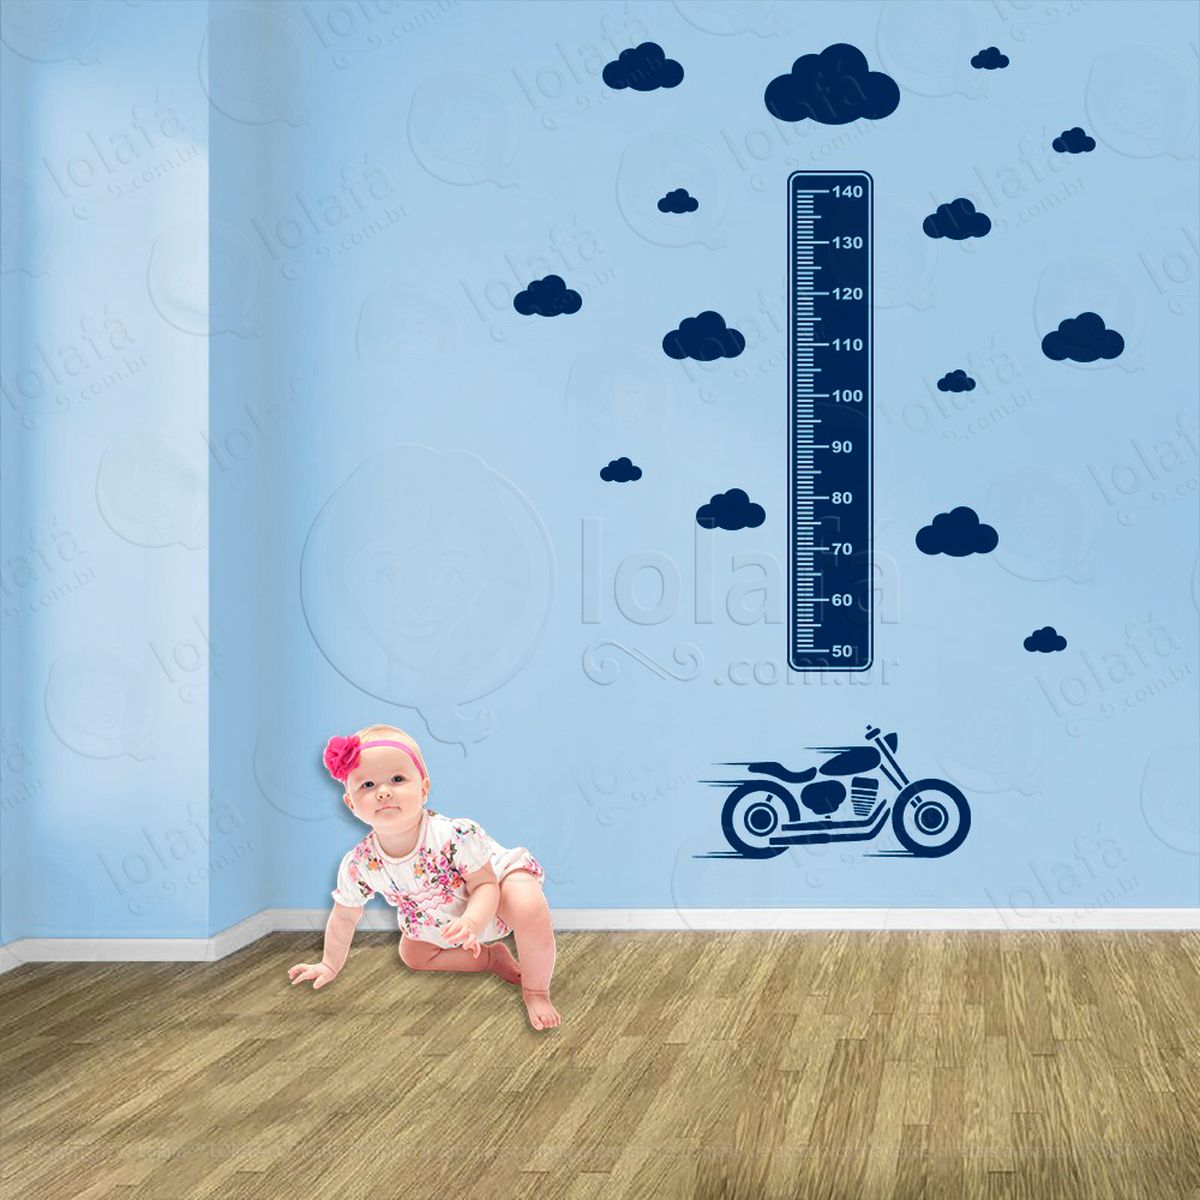 moto e nuvens adesivo régua de crescimento infantil, medidor de altura para quarto, porta e parede - mod:1460